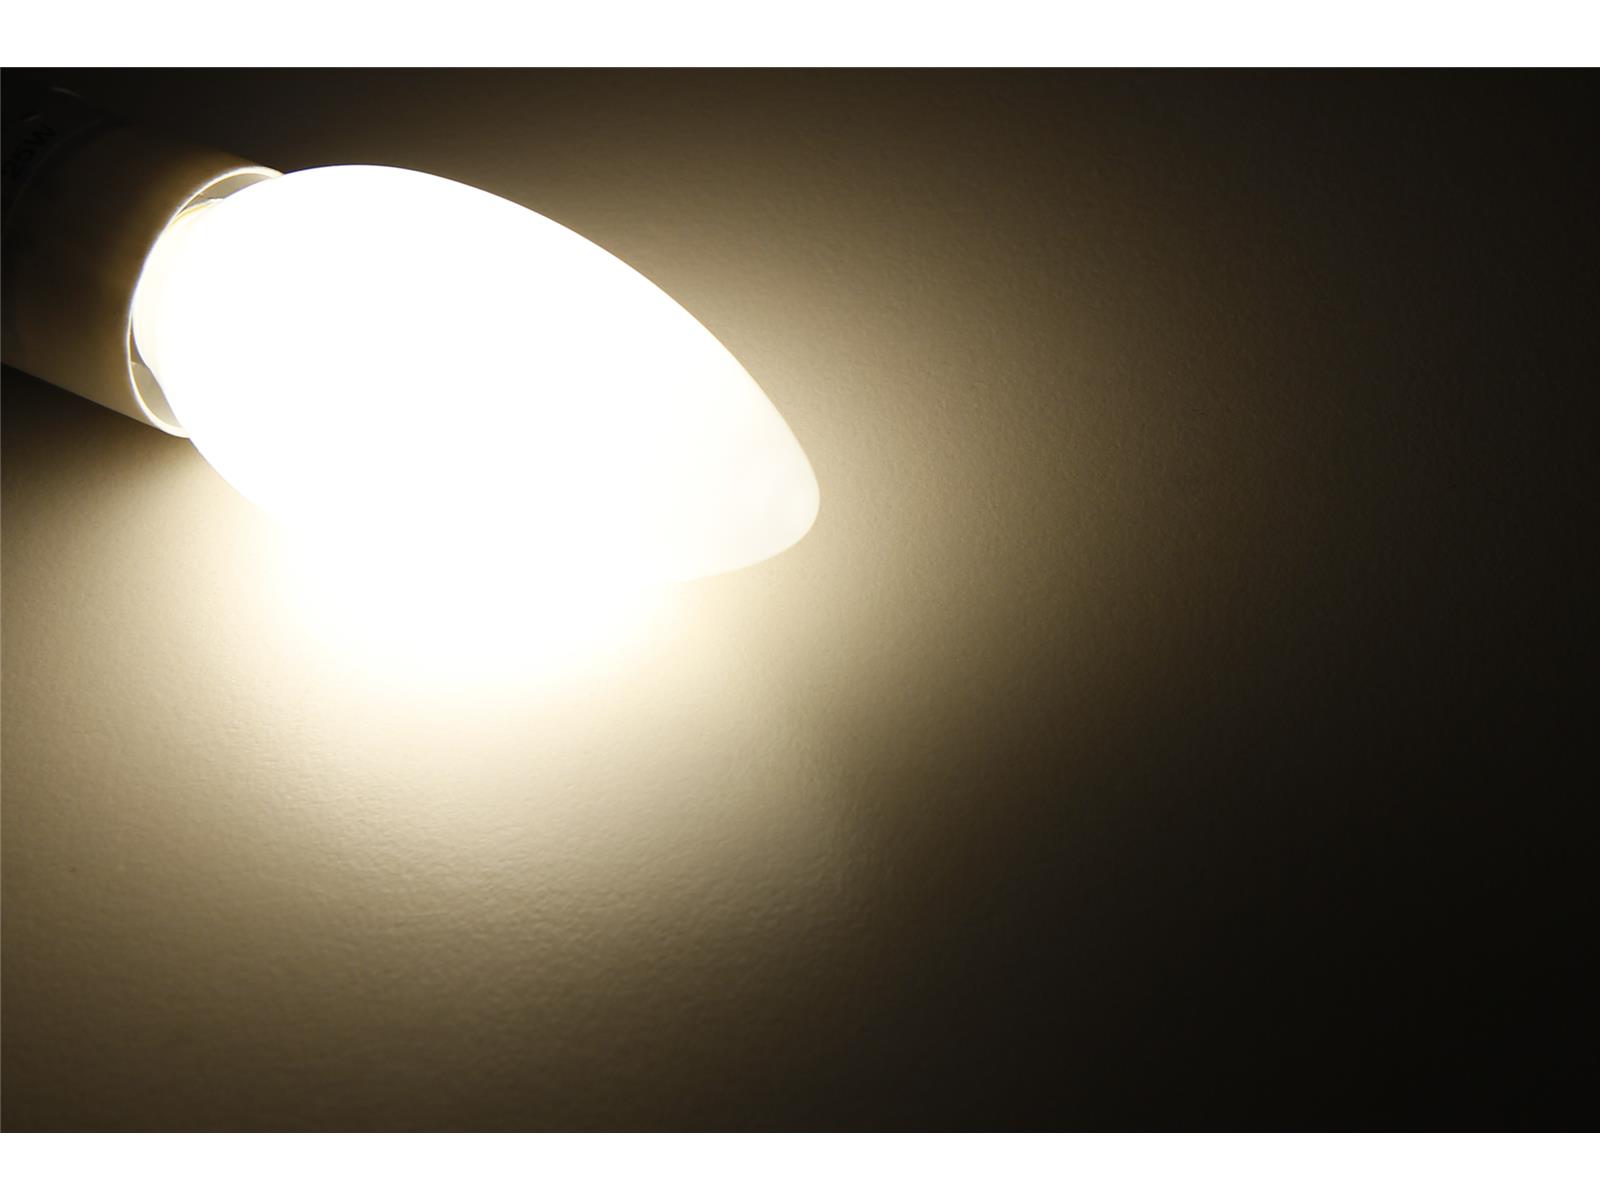 LED Filament Kerzenlampe McShine ''Filed'', E14, 2W, 260 lm, warmweiß, matt